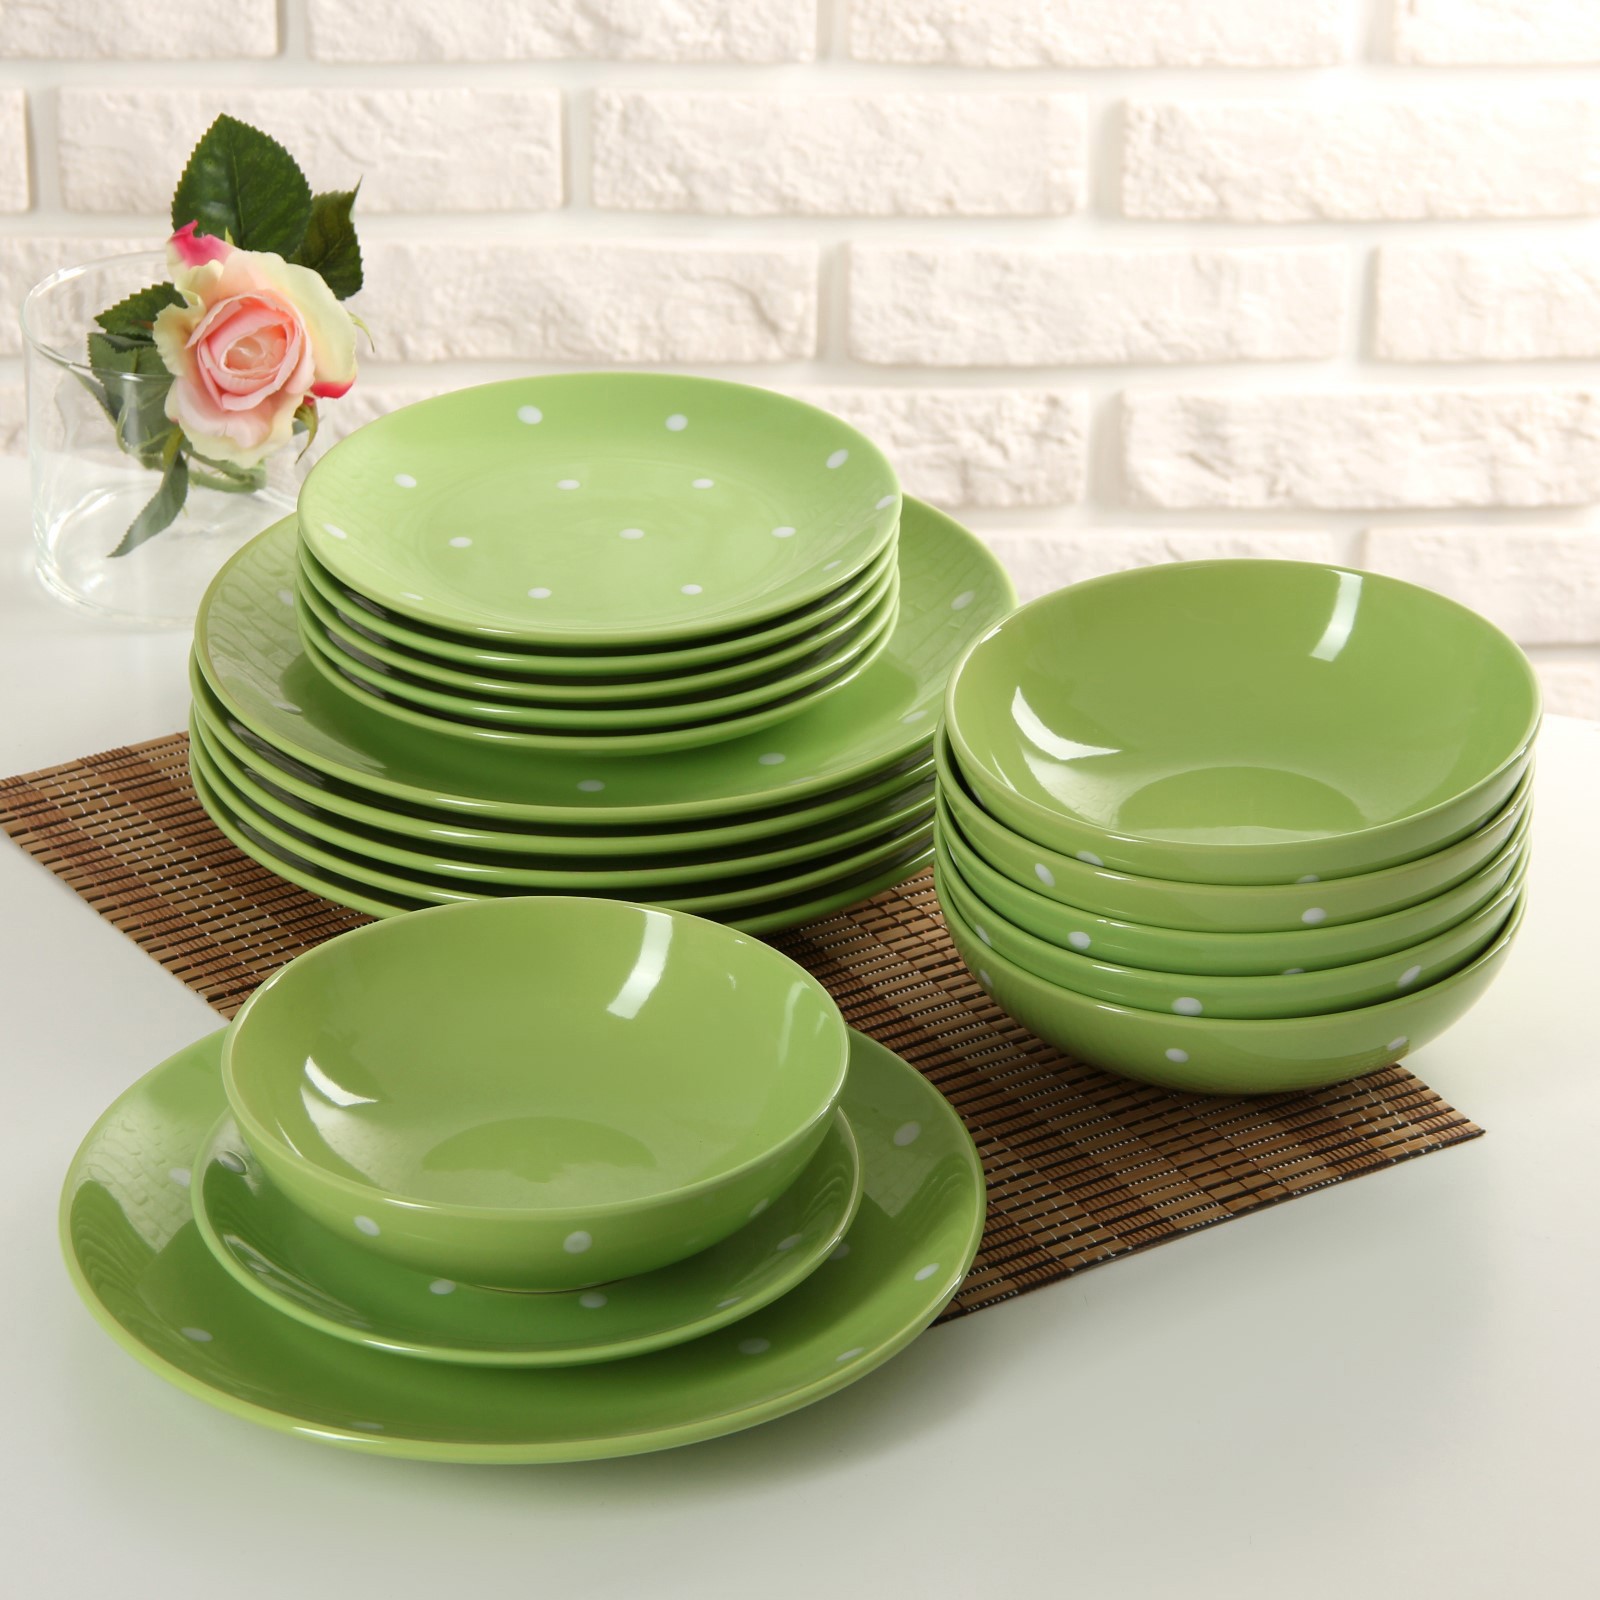 Купить хорошие тарелки. Сервиз столовый «зелёный горох», 18 предметов, цвет зелёный. Посуда Люминарк в икеа. Набор Люминарк 18 предметов зеленый. Столовый сервиз Loraine 28332 19 предметов.